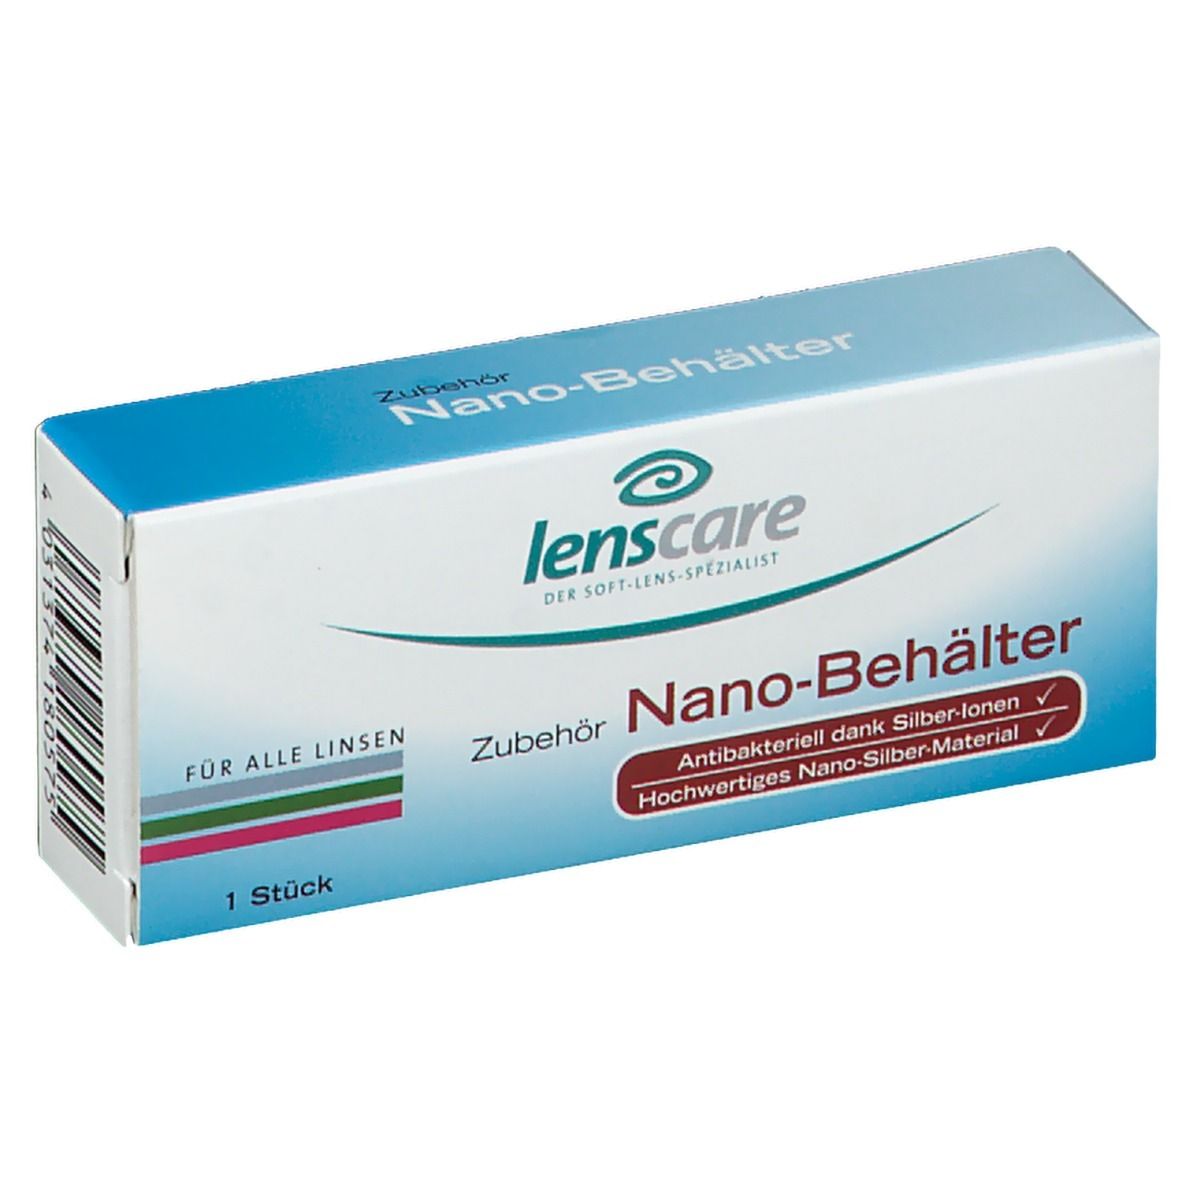 Lenscare Nano-Behälter